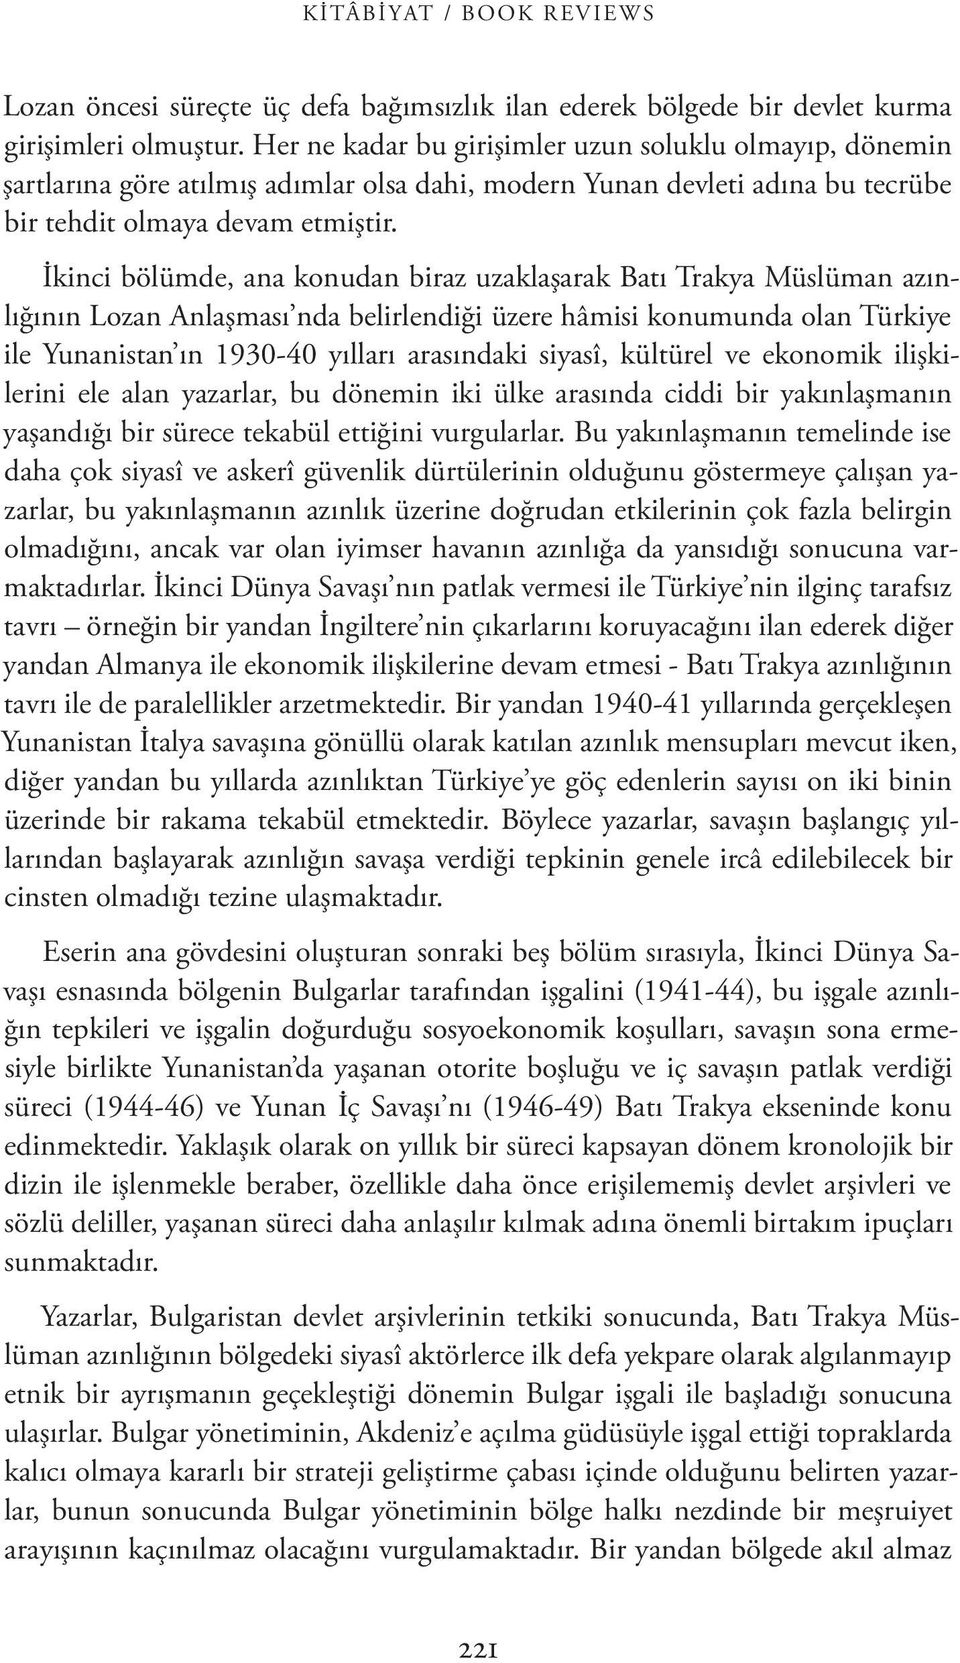 İkinci bölümde, ana konudan biraz uzaklaşarak Batı Trakya Müslüman azınlığının Lozan Anlaşması nda belirlendiği üzere hâmisi konumunda olan Türkiye ile Yunanistan ın 1930-40 yılları arasındaki